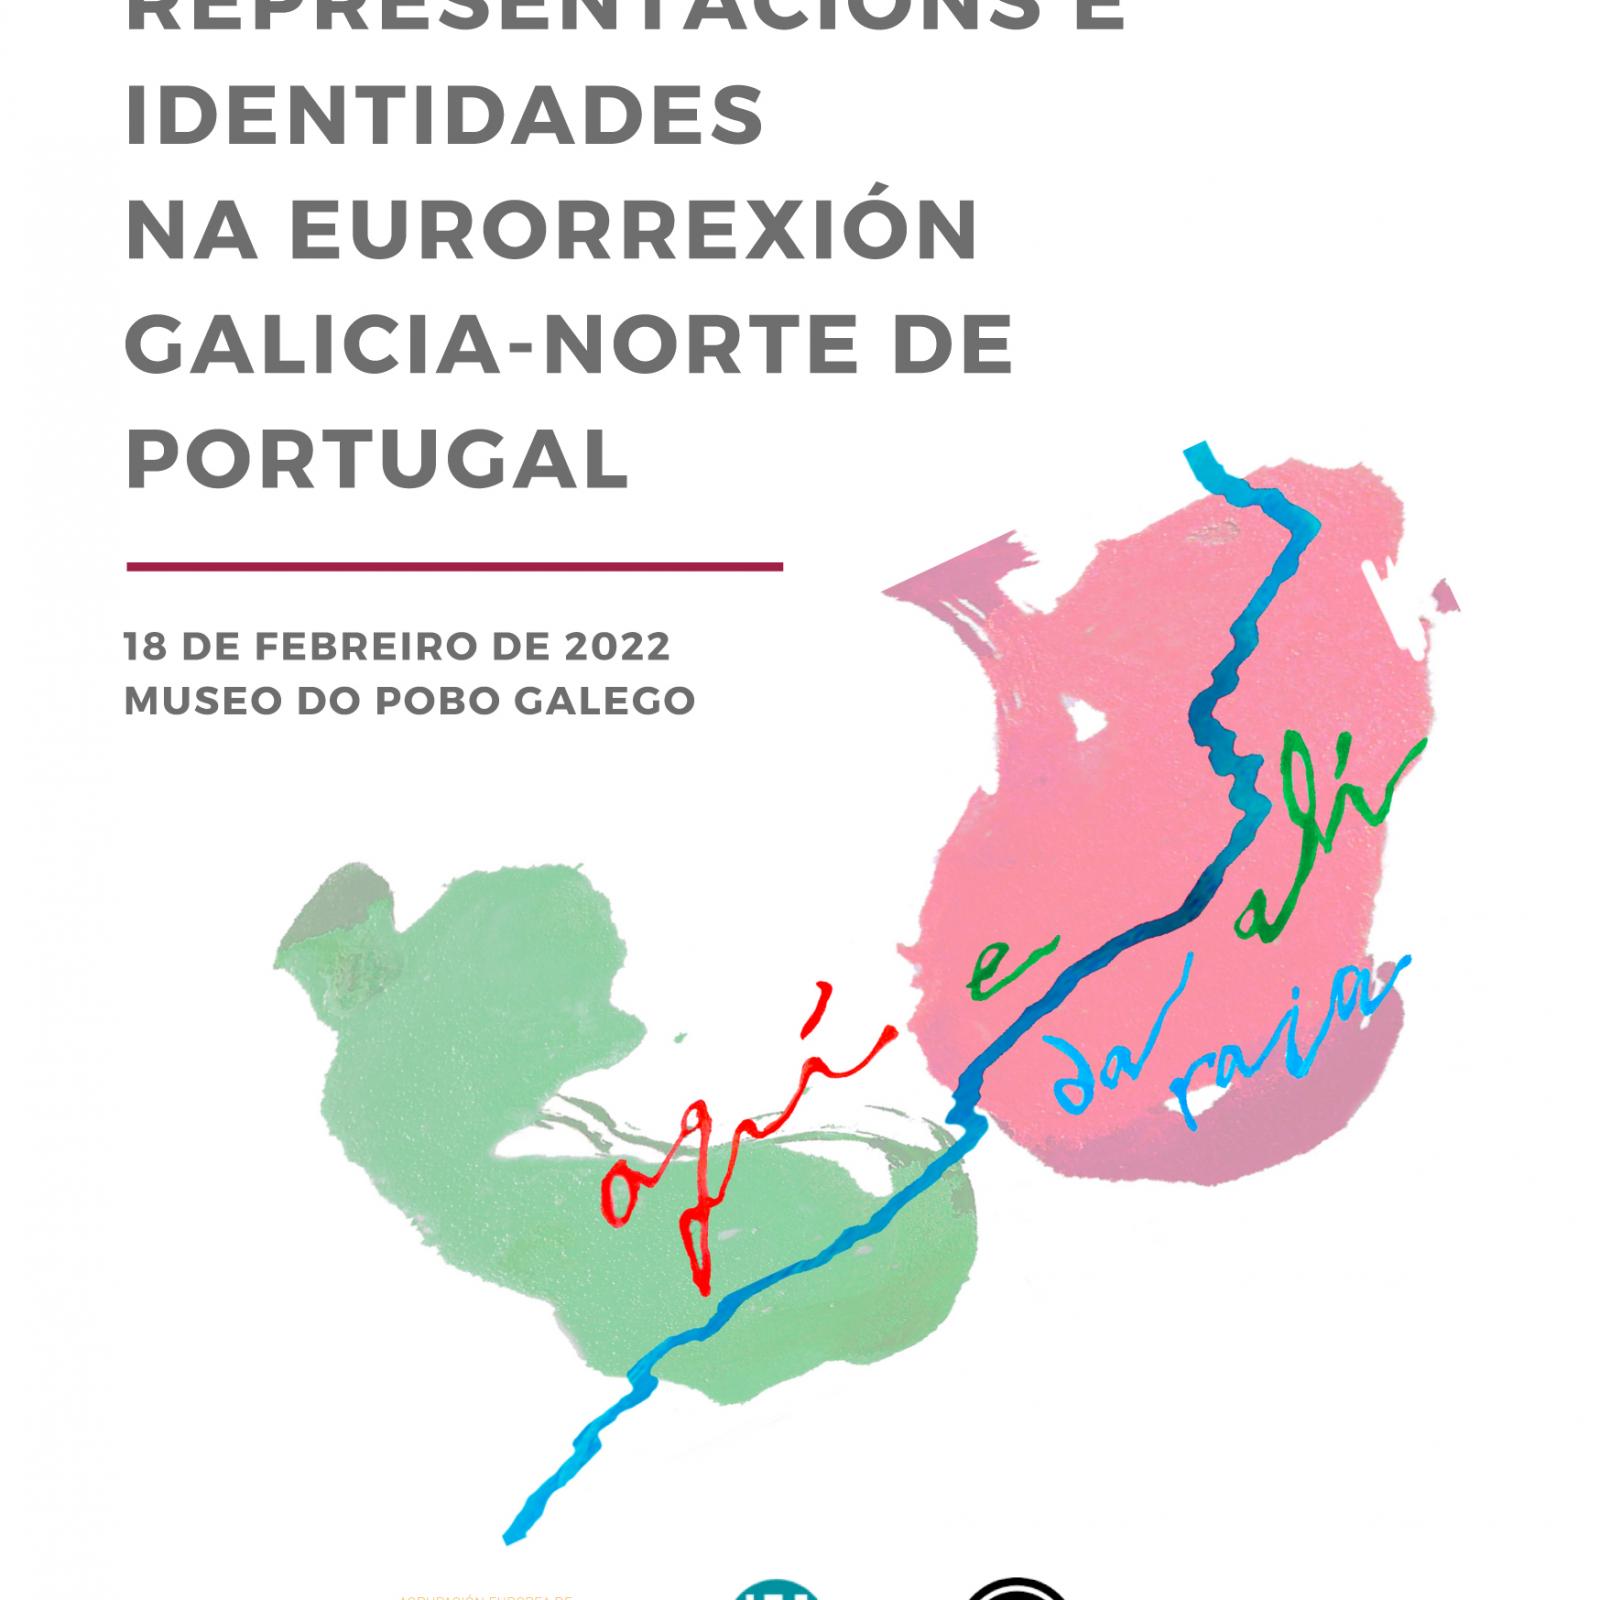 Xornada: Representacións e identidades na eurorrexión Galicia-norte de Portugal. Aquí e alí da raia